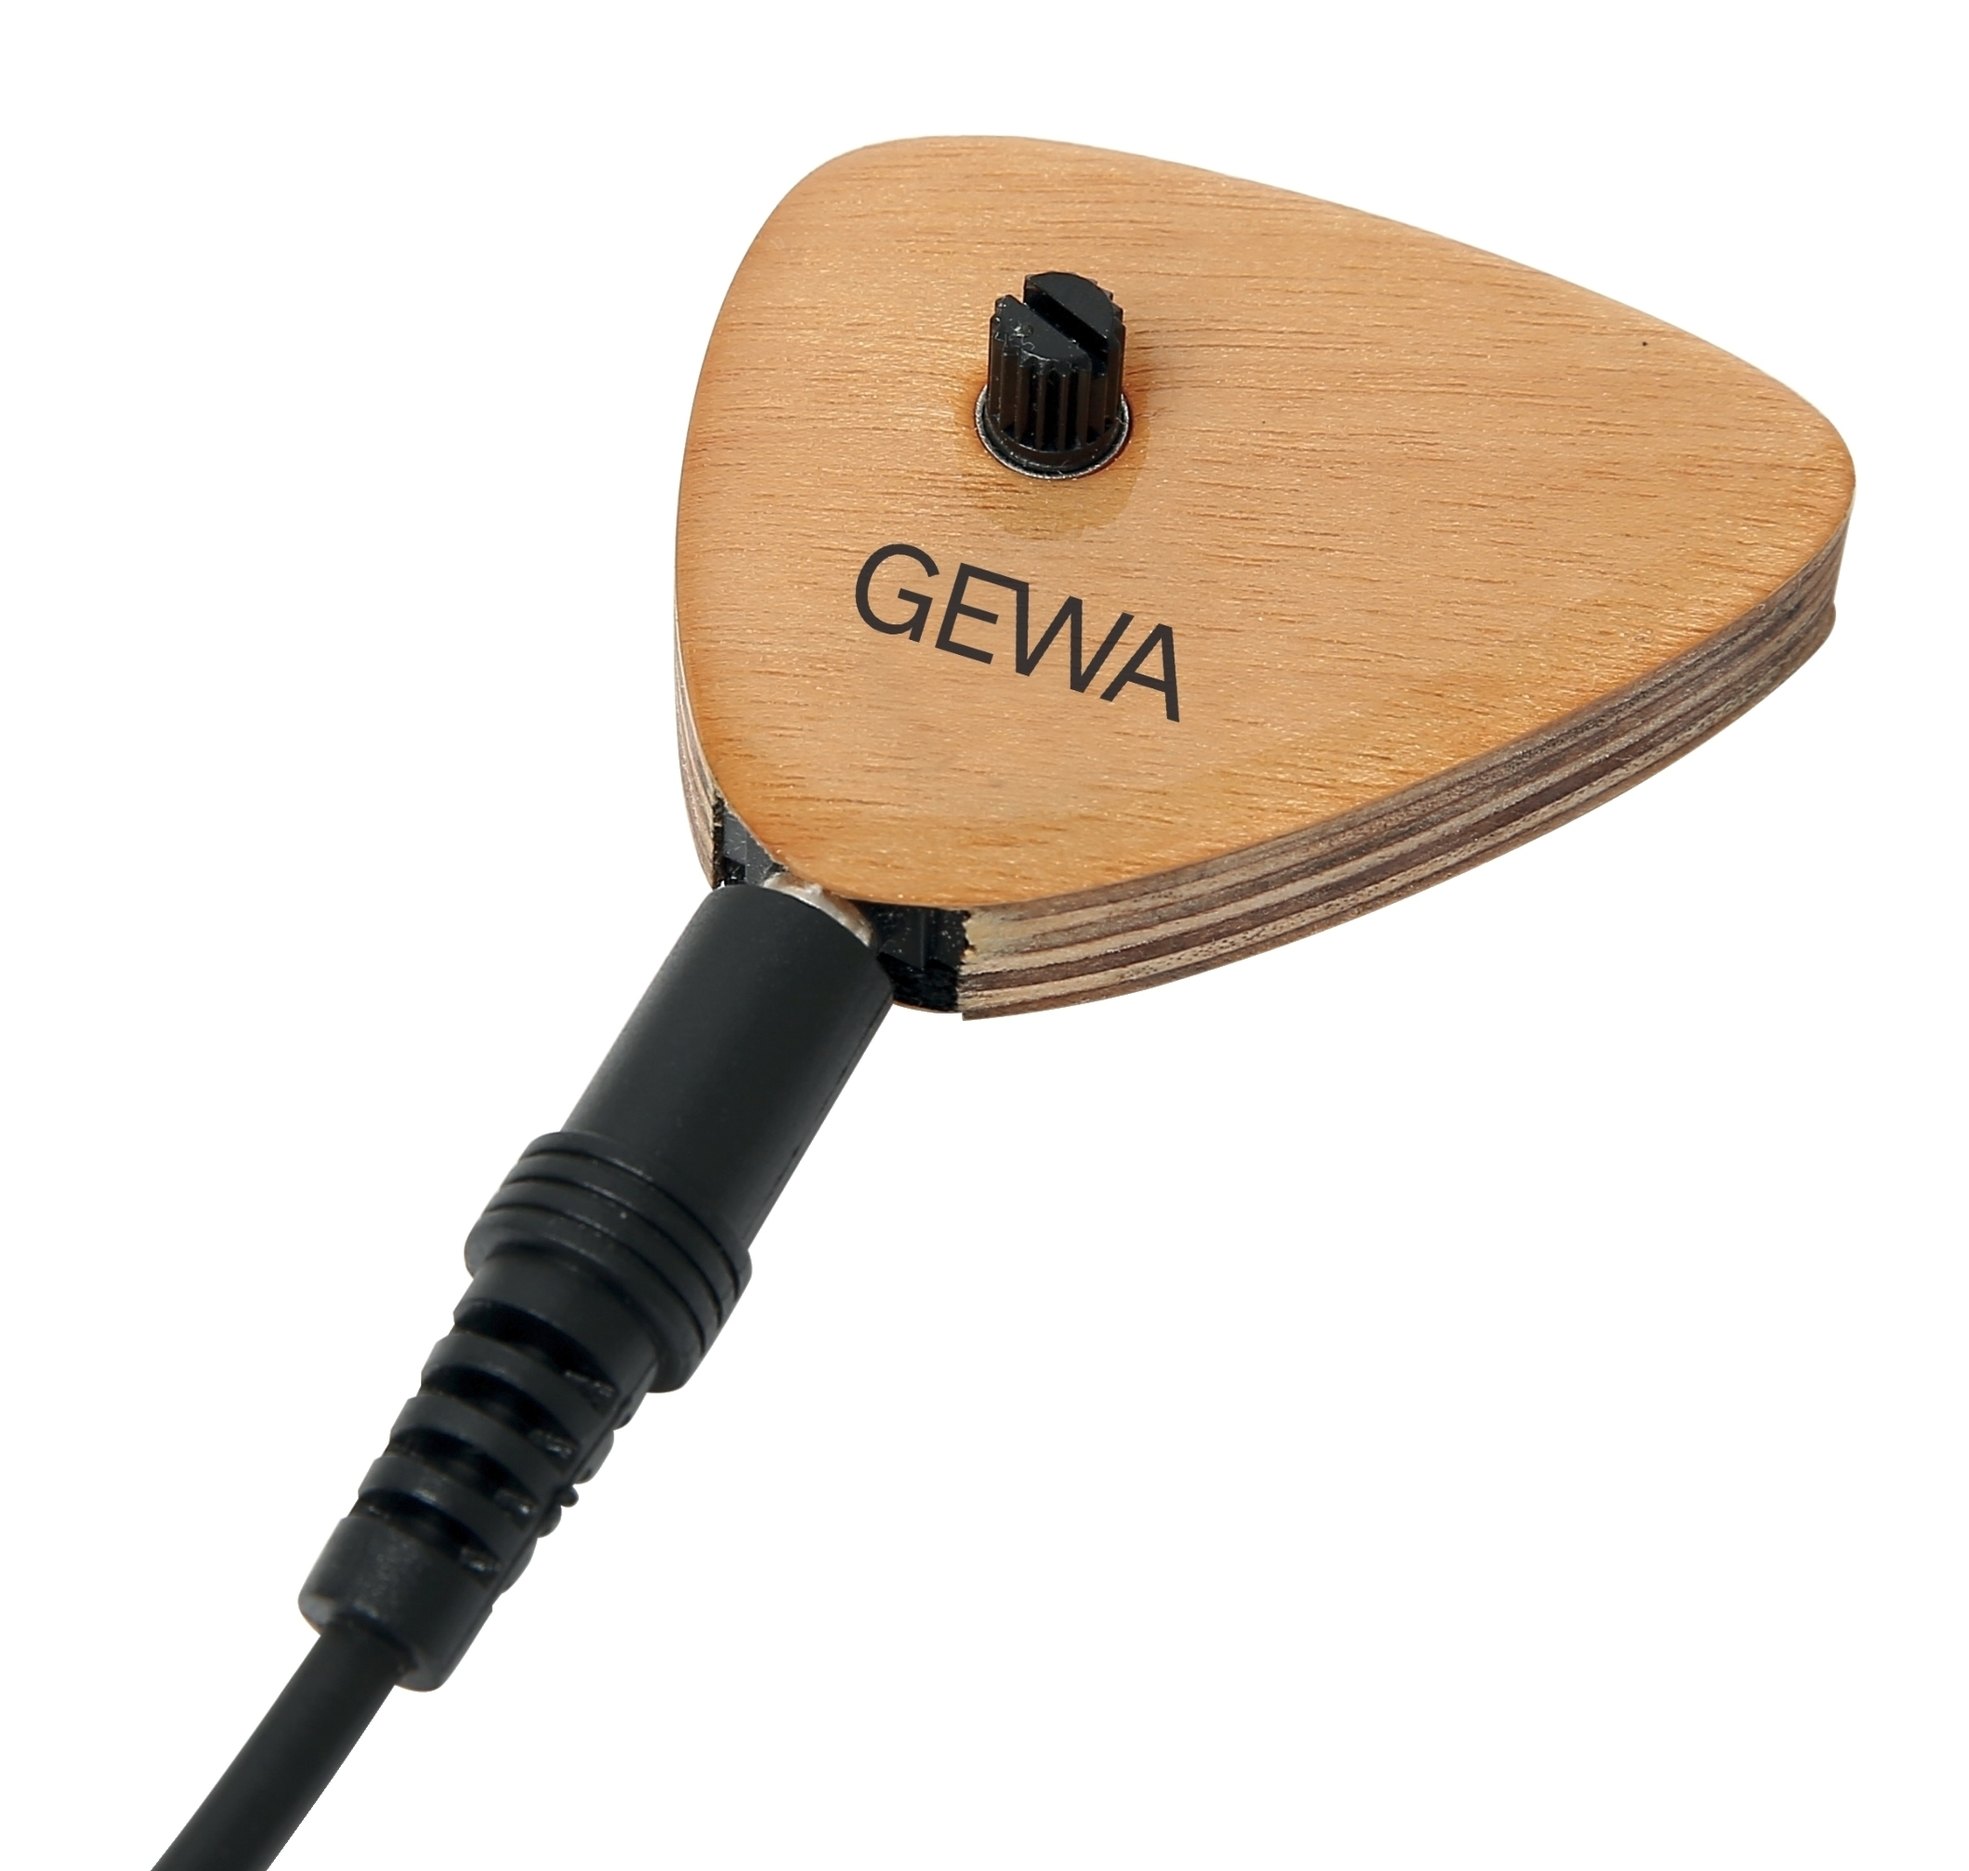 GEWA AP2 Akustik Universal Tonabnehmer mit Volume Regler